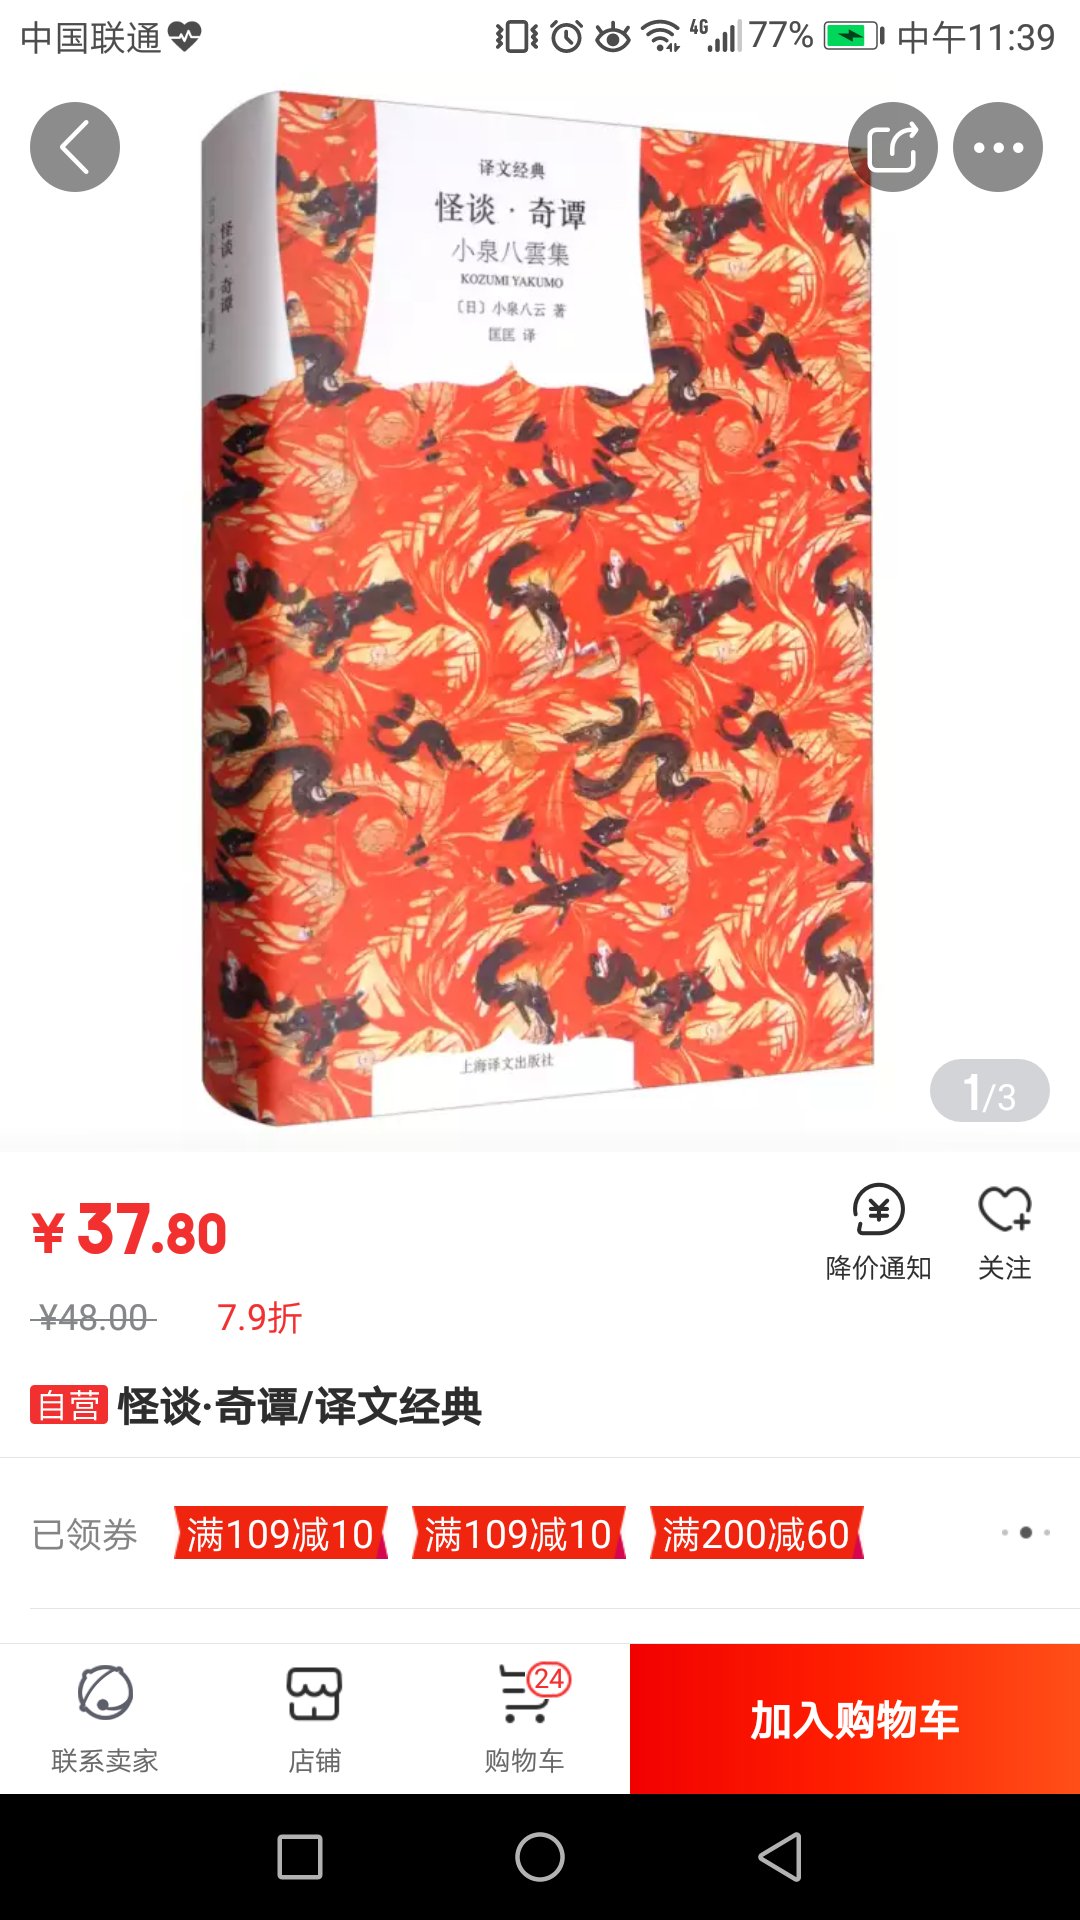 上海译文，窗帘布系列，印刷质量很好，大家翻译，经典名著，慢慢收集，慢慢读起来。